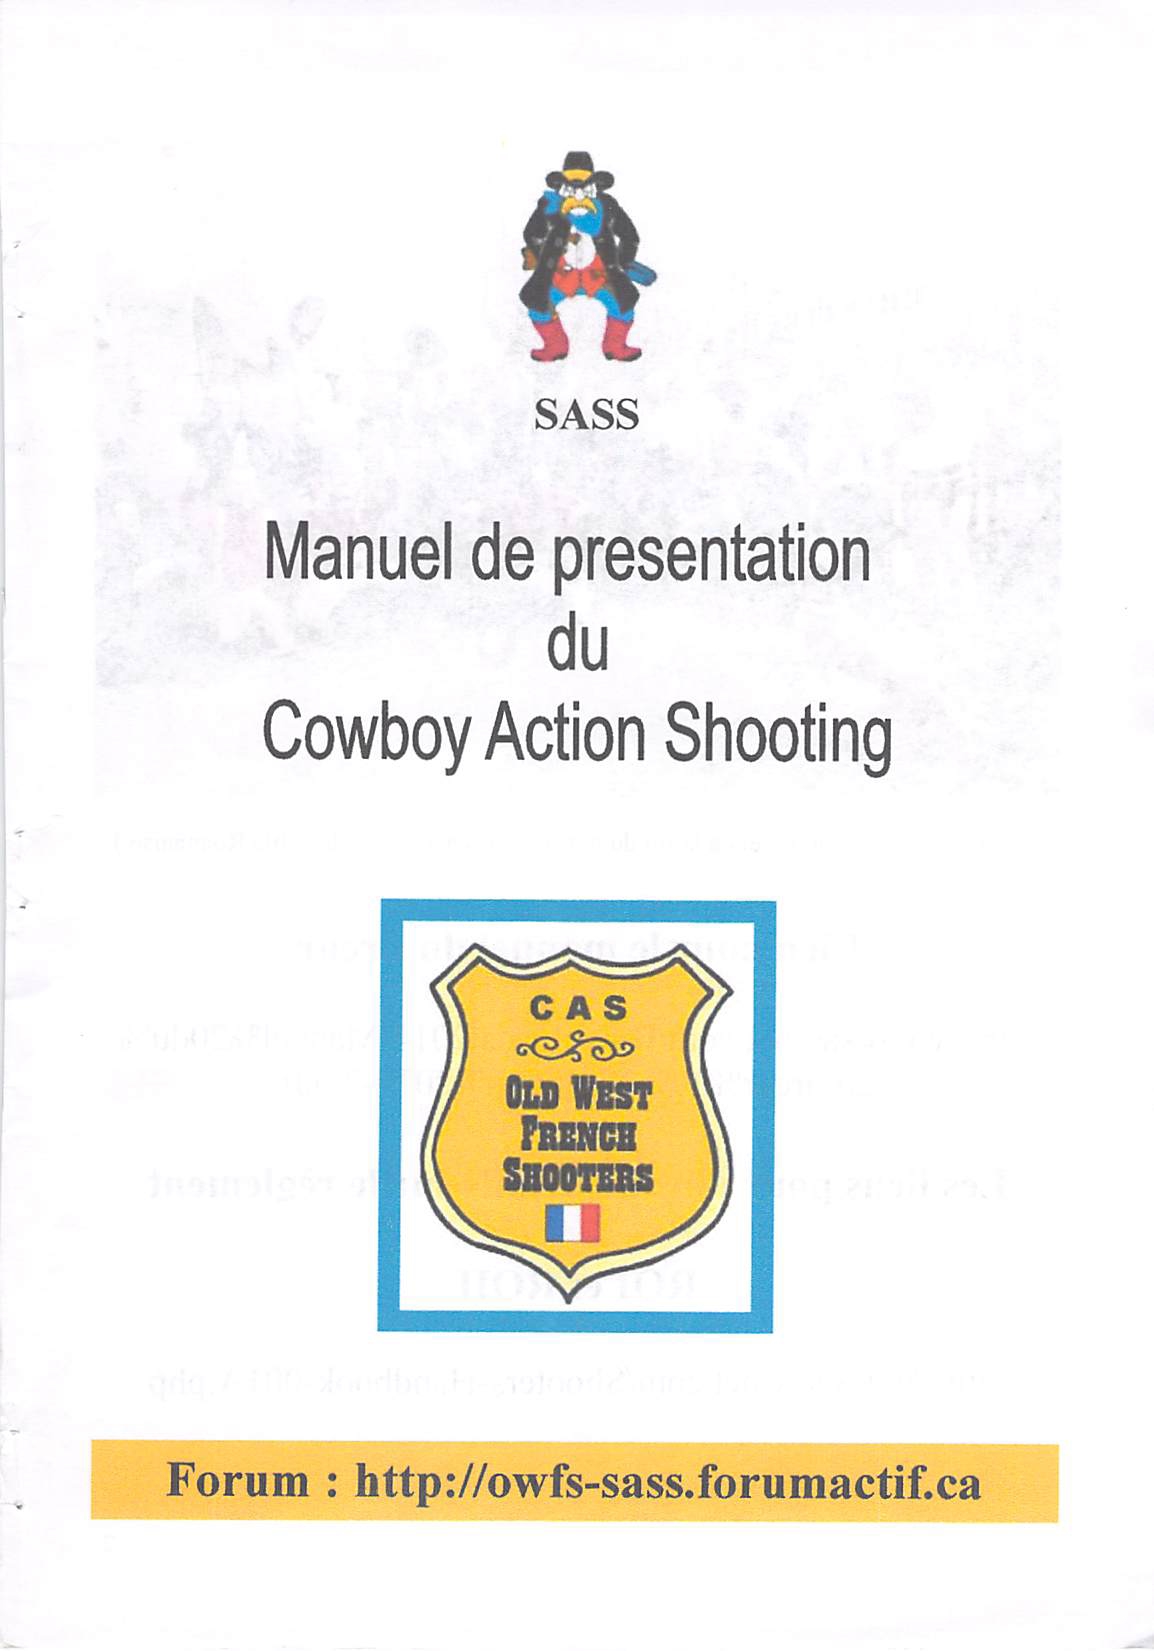 CAS manuel de presentation SASS0001